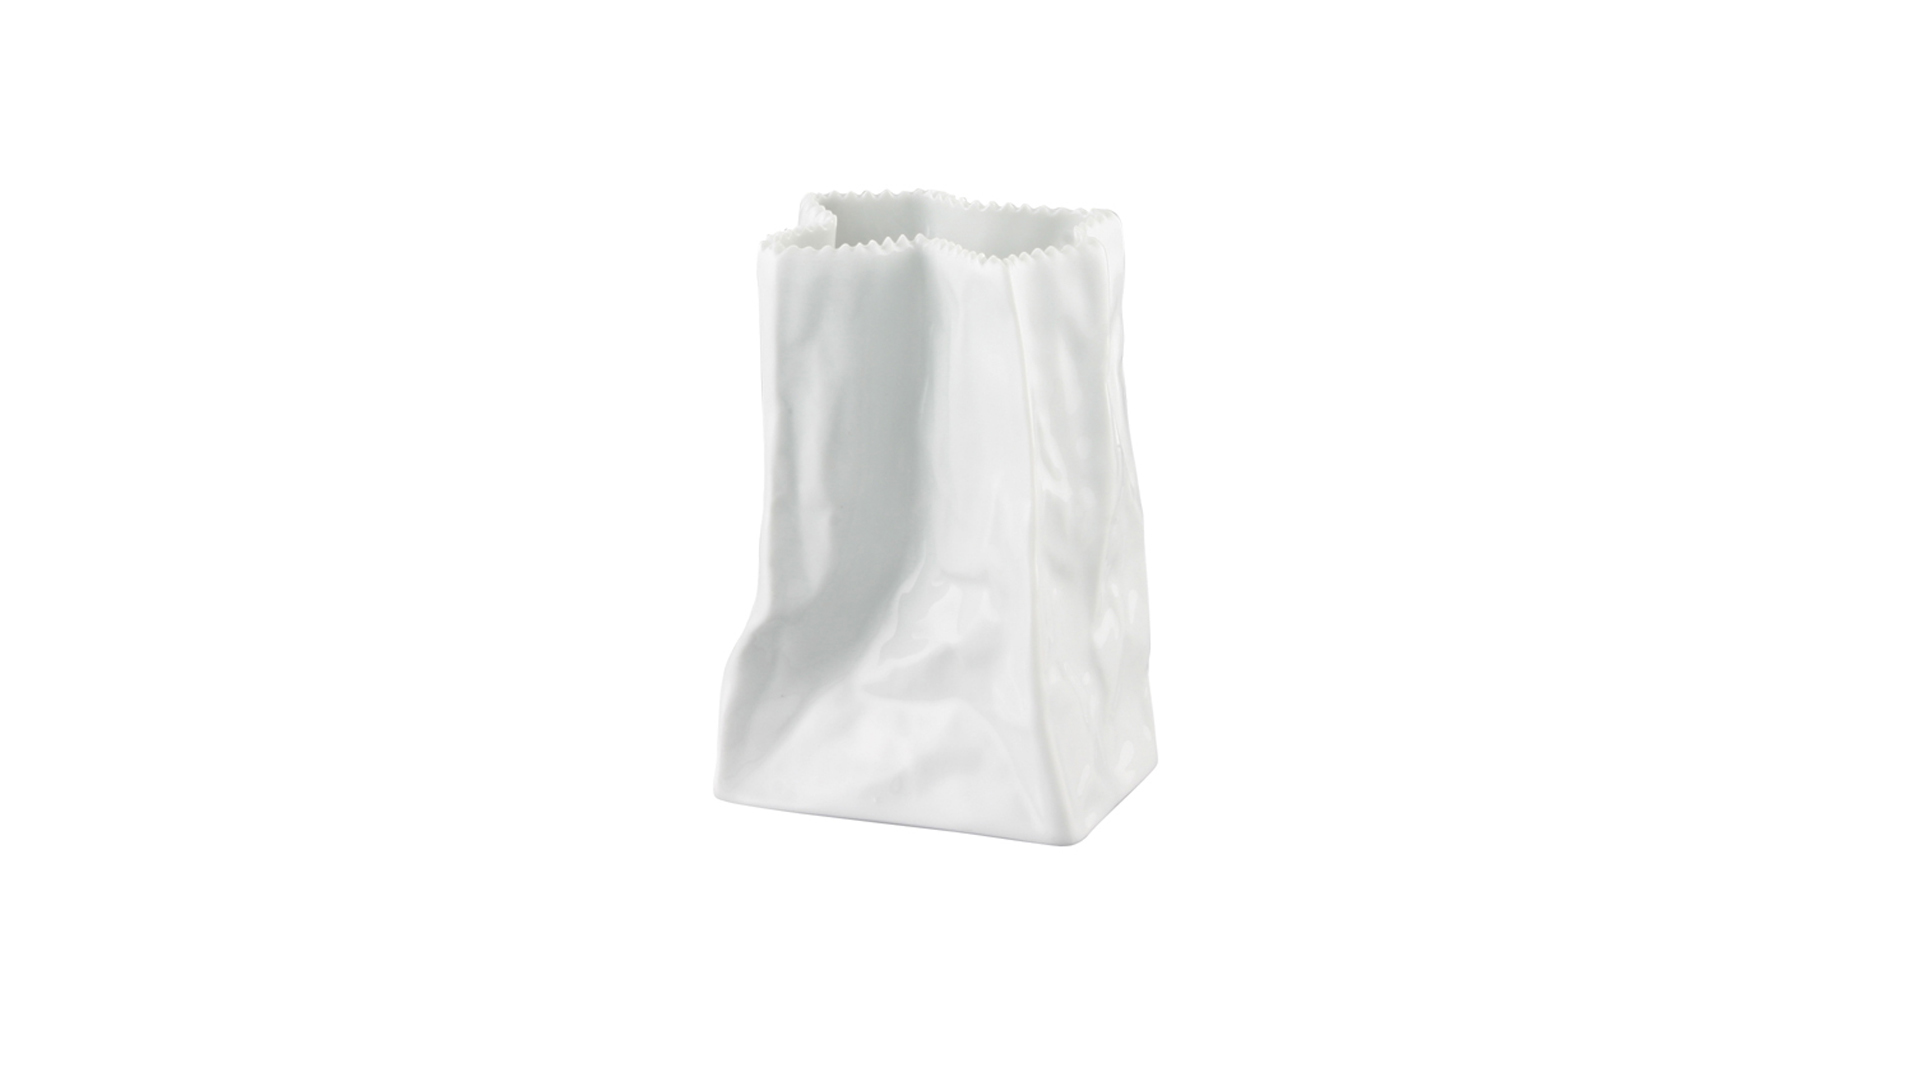 Ваза Rosenthal Пакет 14 см, фарфор, белая, глазурь, п/к